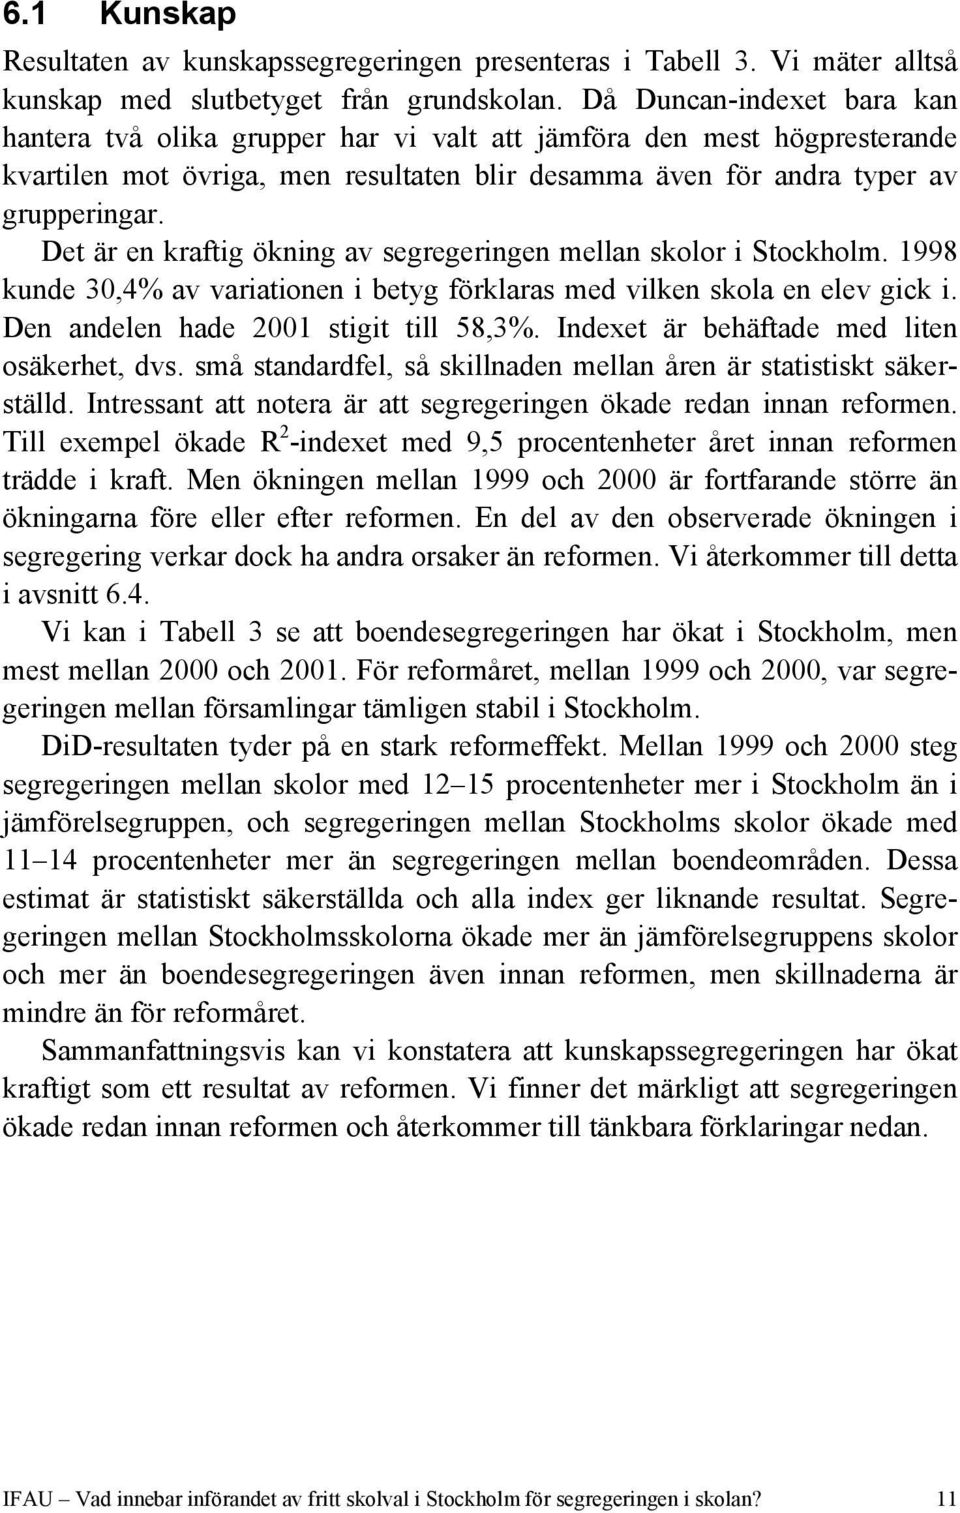 Det är en kraftig ökning av segregeringen mellan skolor i Stockholm. 1998 kunde 30,4% av variationen i betyg förklaras med vilken skola en elev gick i. Den andelen hade 2001 stigit till 58,3%.